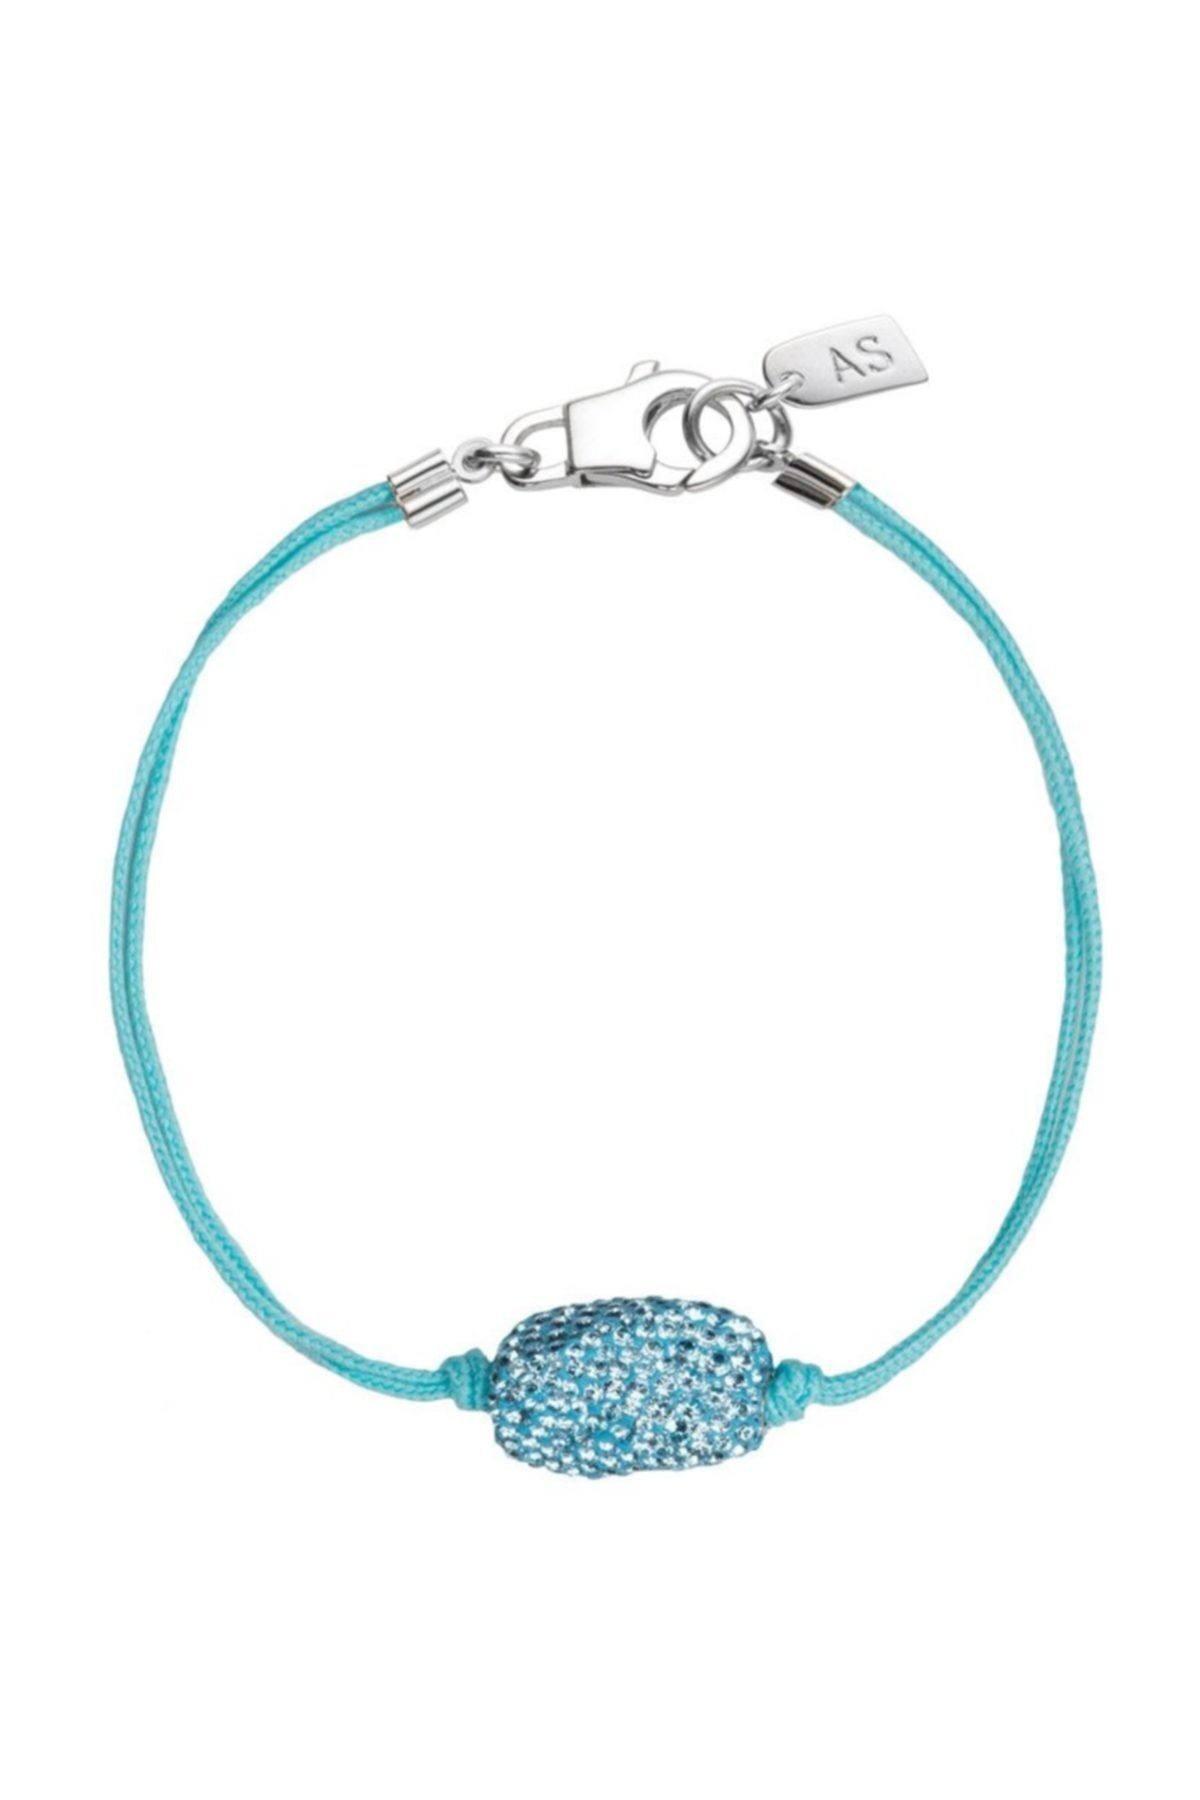 Swarovski Bilezik As Un Women Bracelet Aqua Size M 5233870